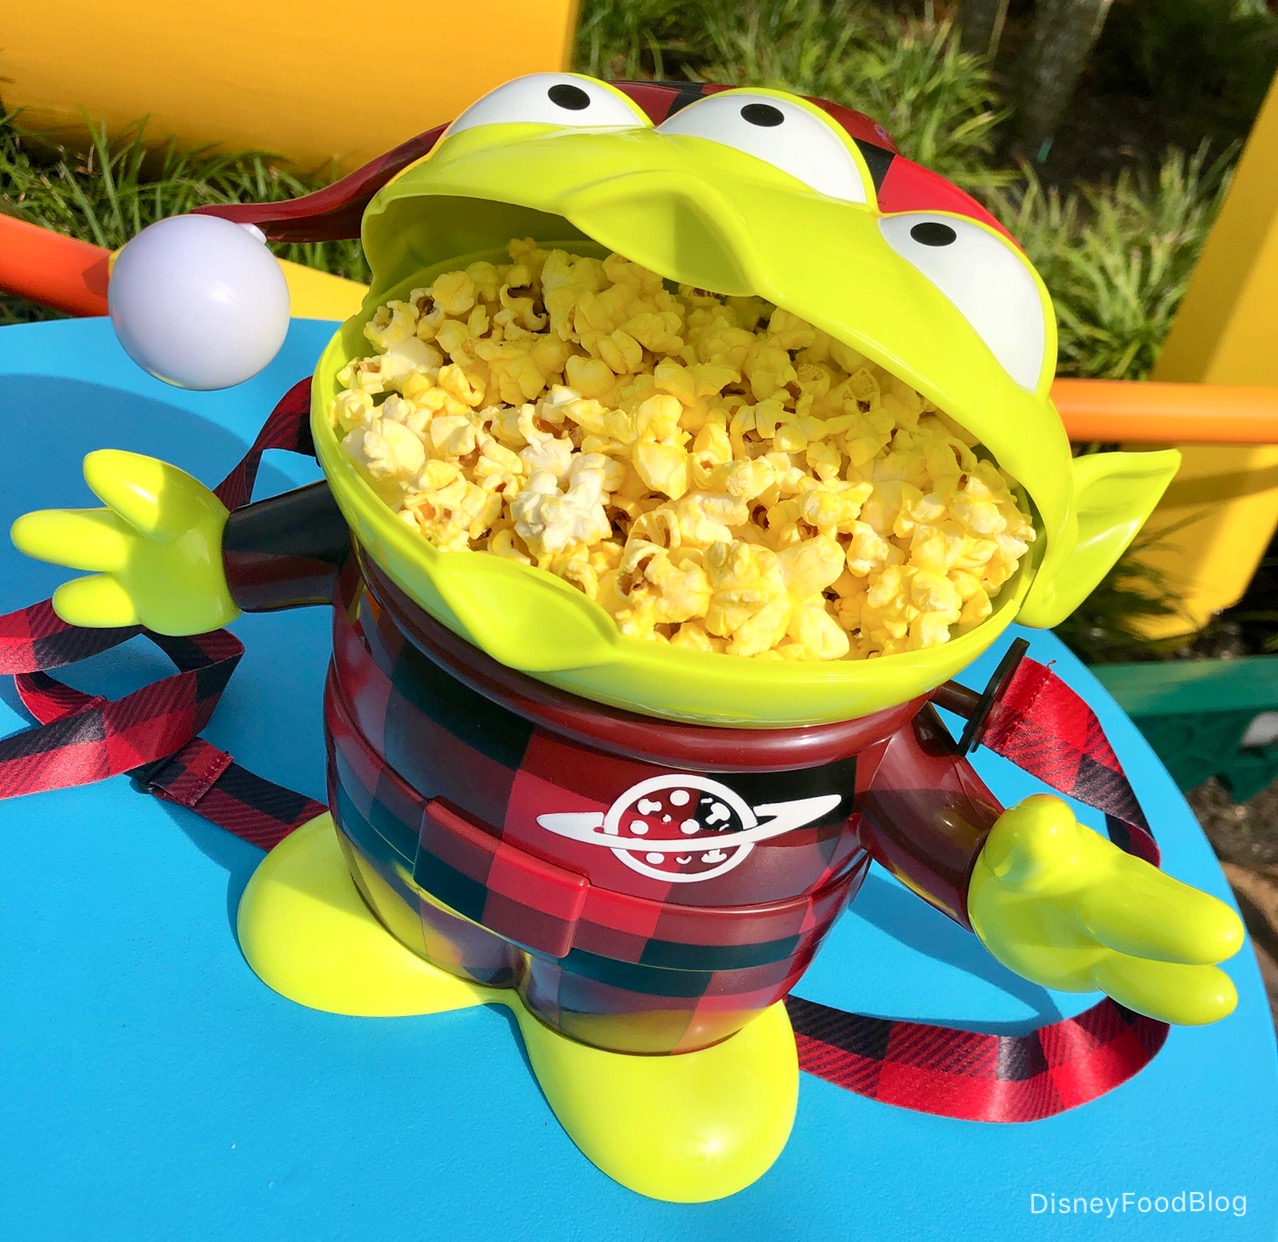 The Buffalo Plaid Alien Popcorn Bucket Is HERE in Disney World! (You